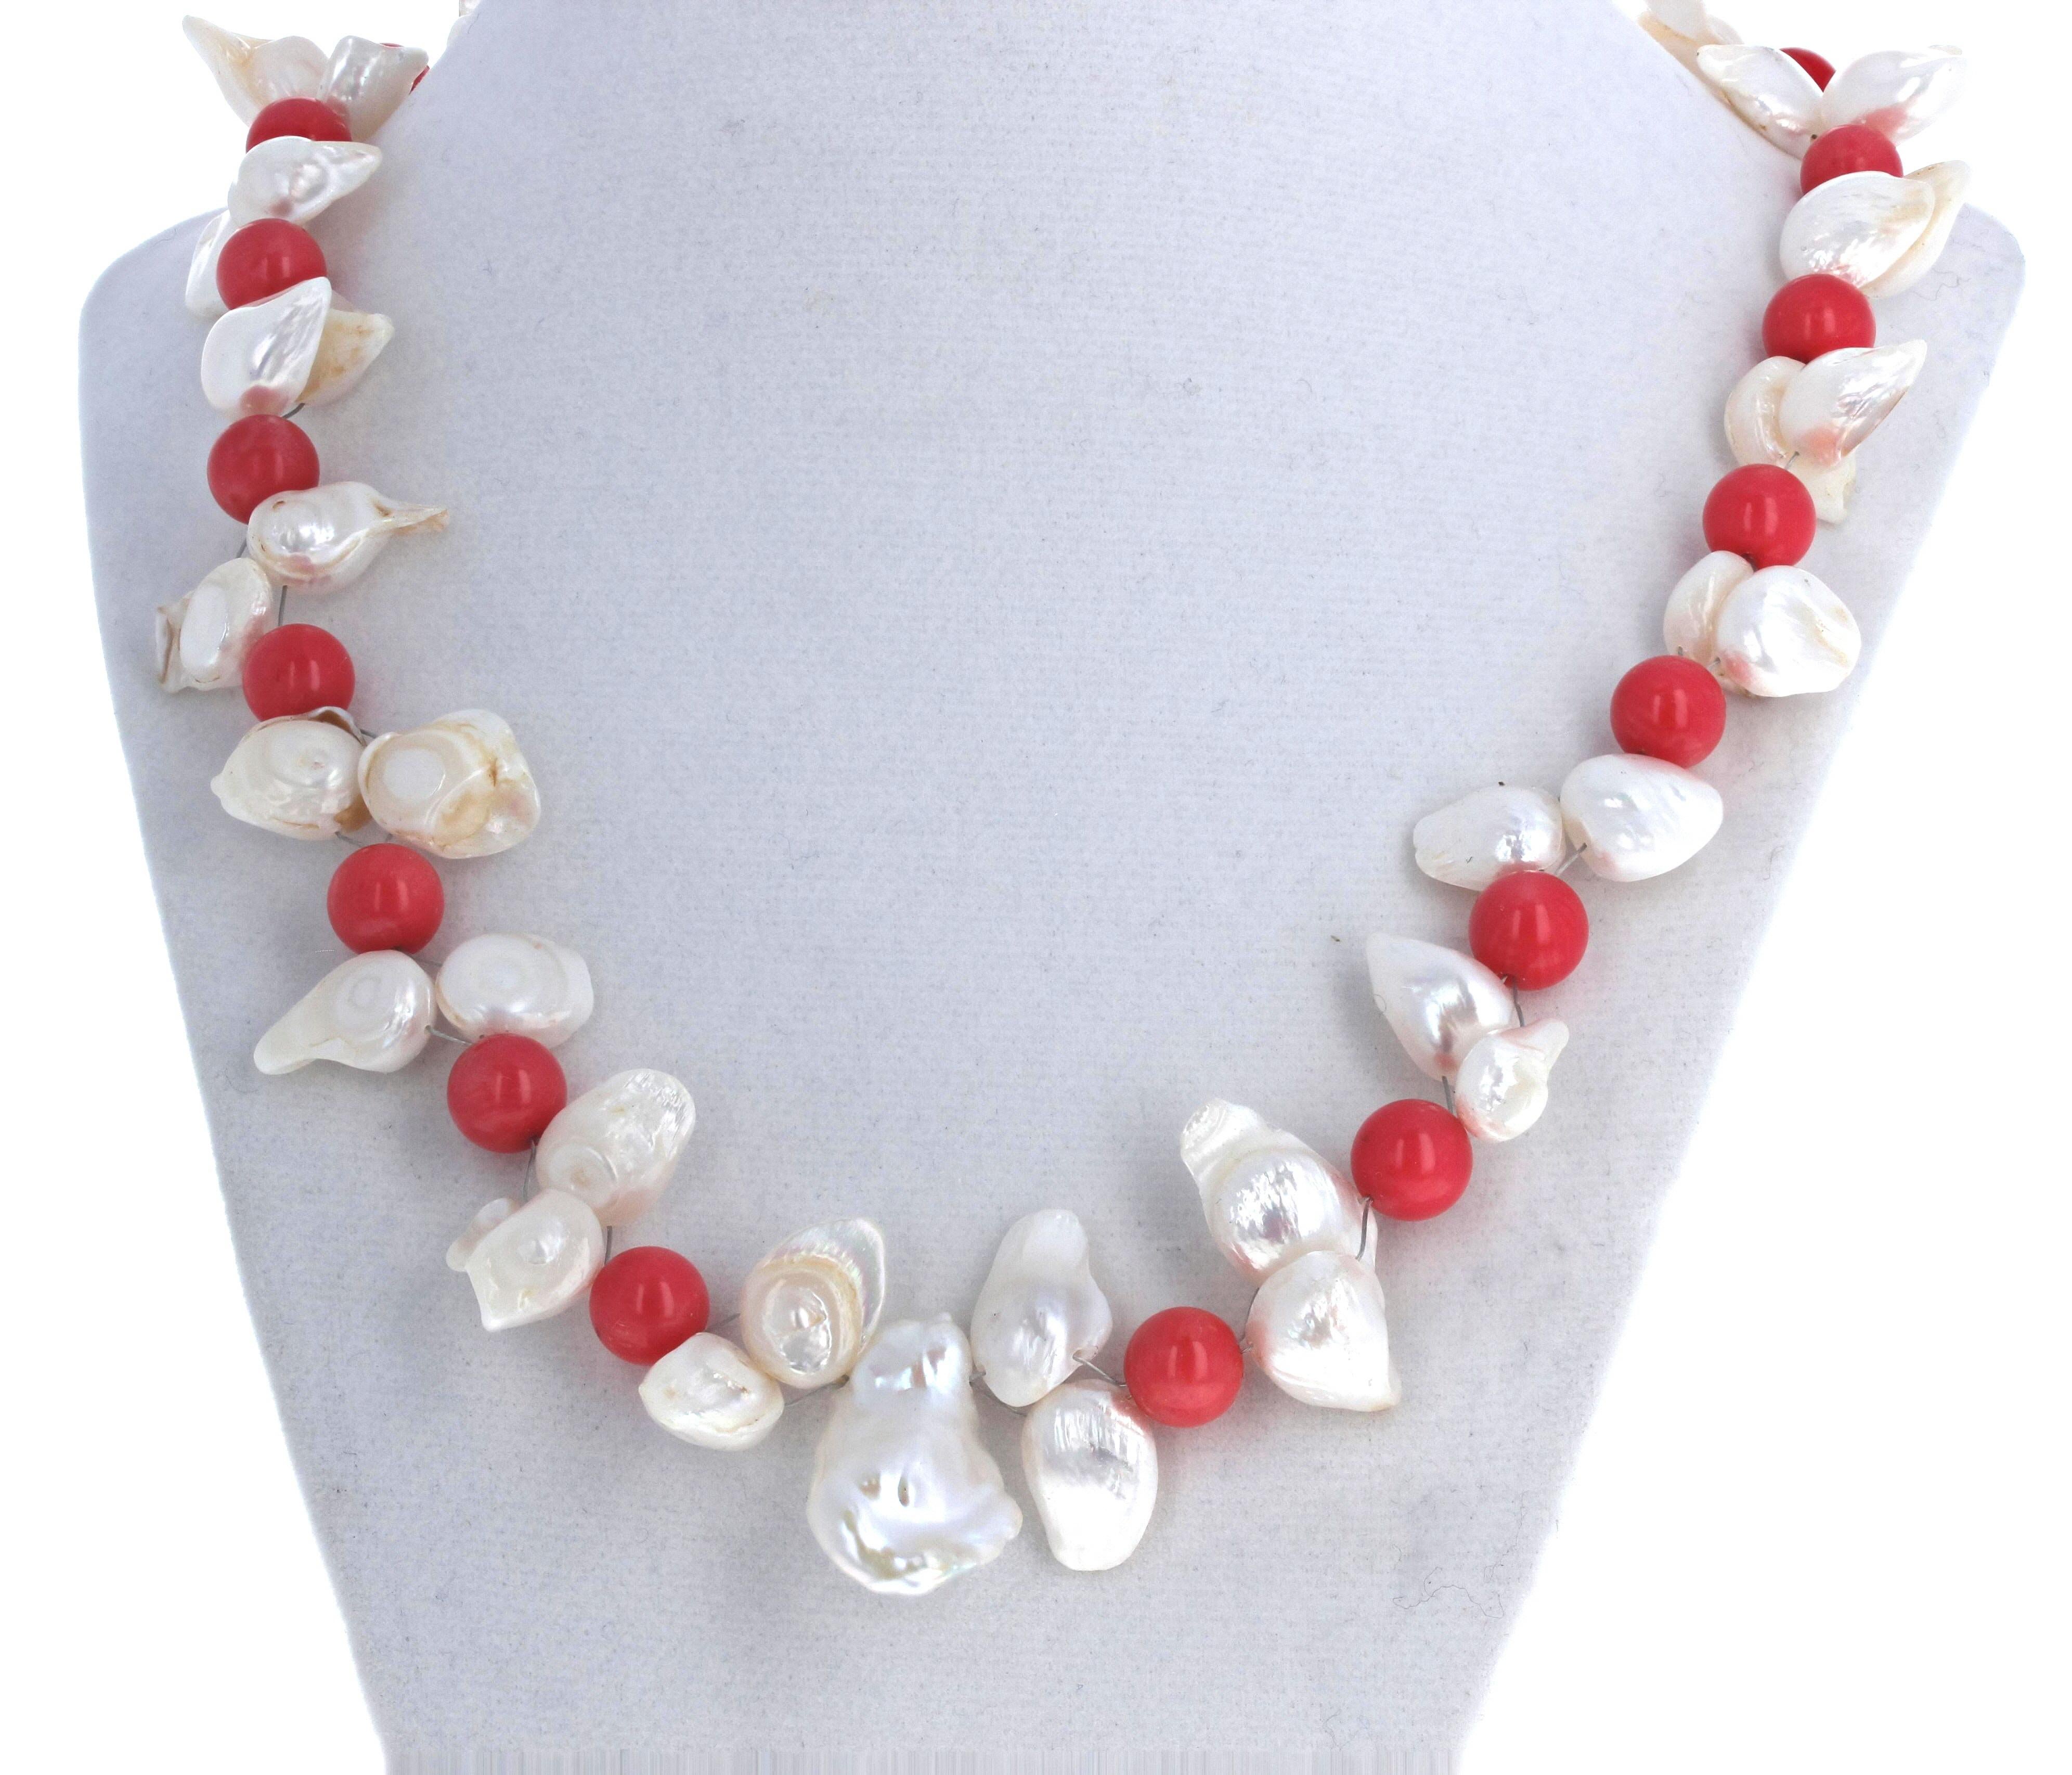 Ces fascinantes perles blanches (environ 24 mm x 15 mm) rehaussent ces fascinants coraux italiens ronds et polis de couleur orangée.  Il mesure 21 pouces de long et le fermoir est un crochet plaqué or facile à utiliser.  